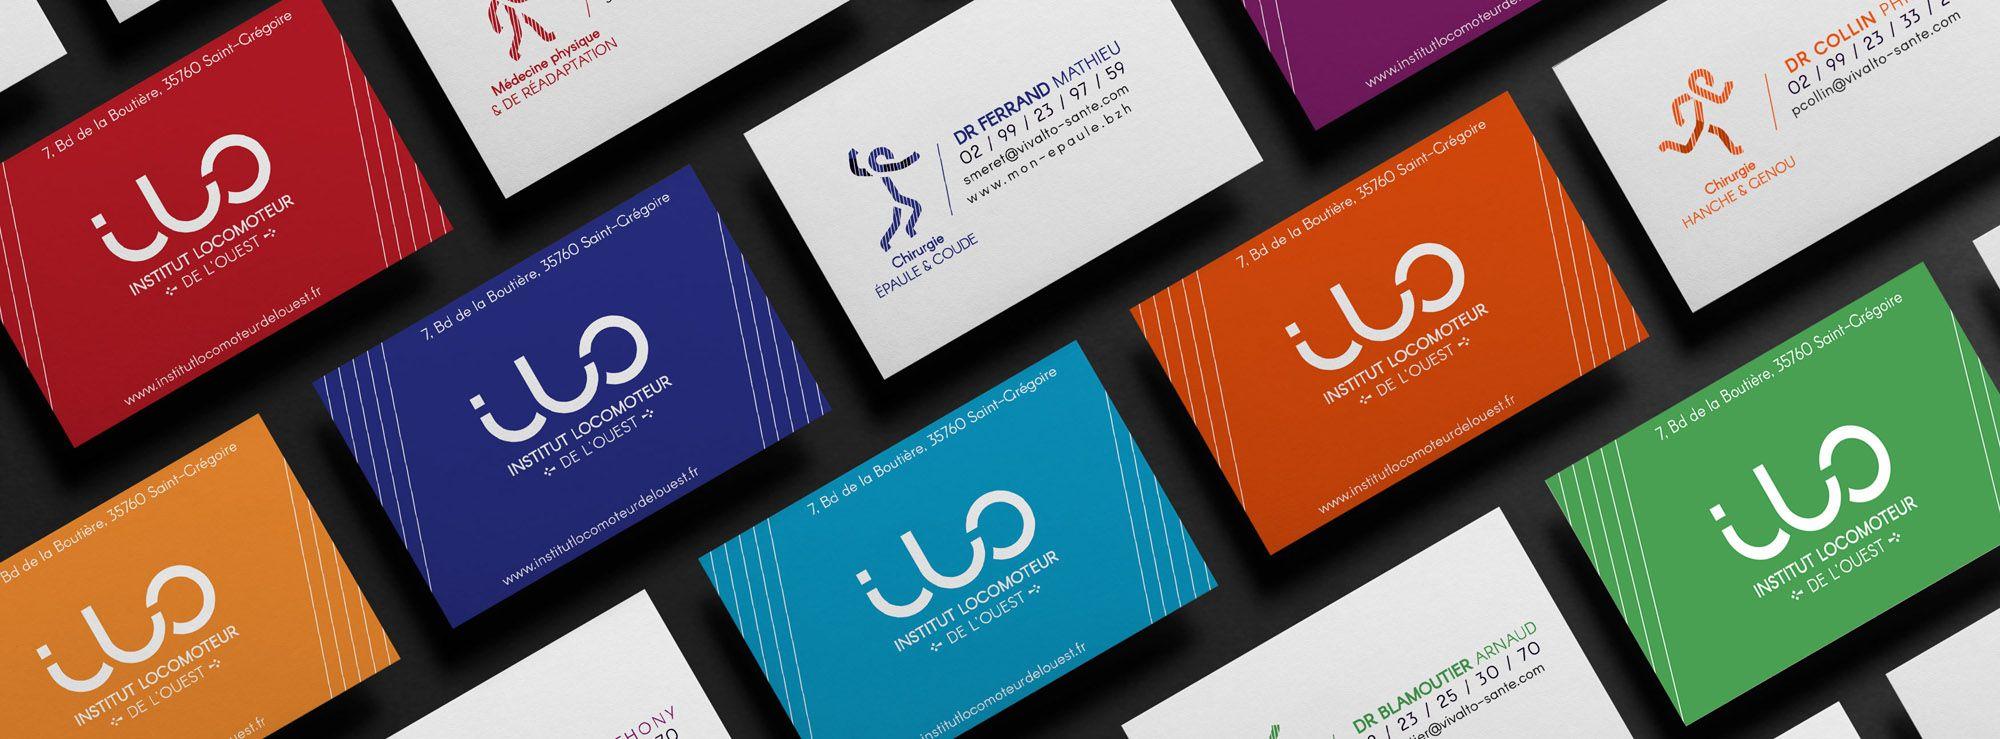 ILO Logo - logo and visual identity